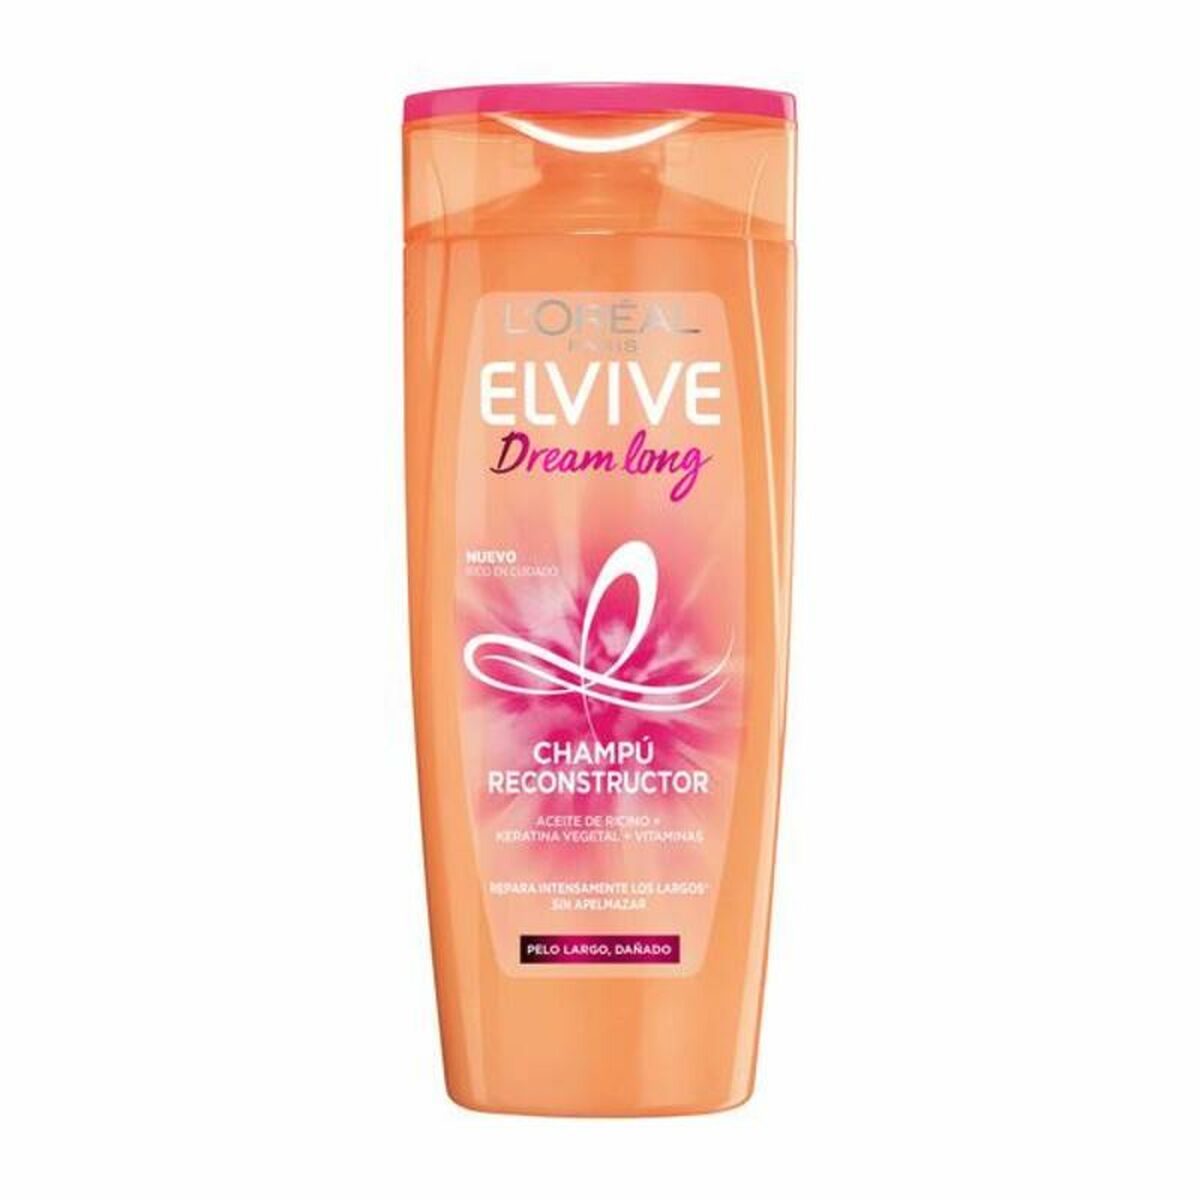 Strengthening Shampoo L'Oreal Make Up Elvive Dream Long 285 ml